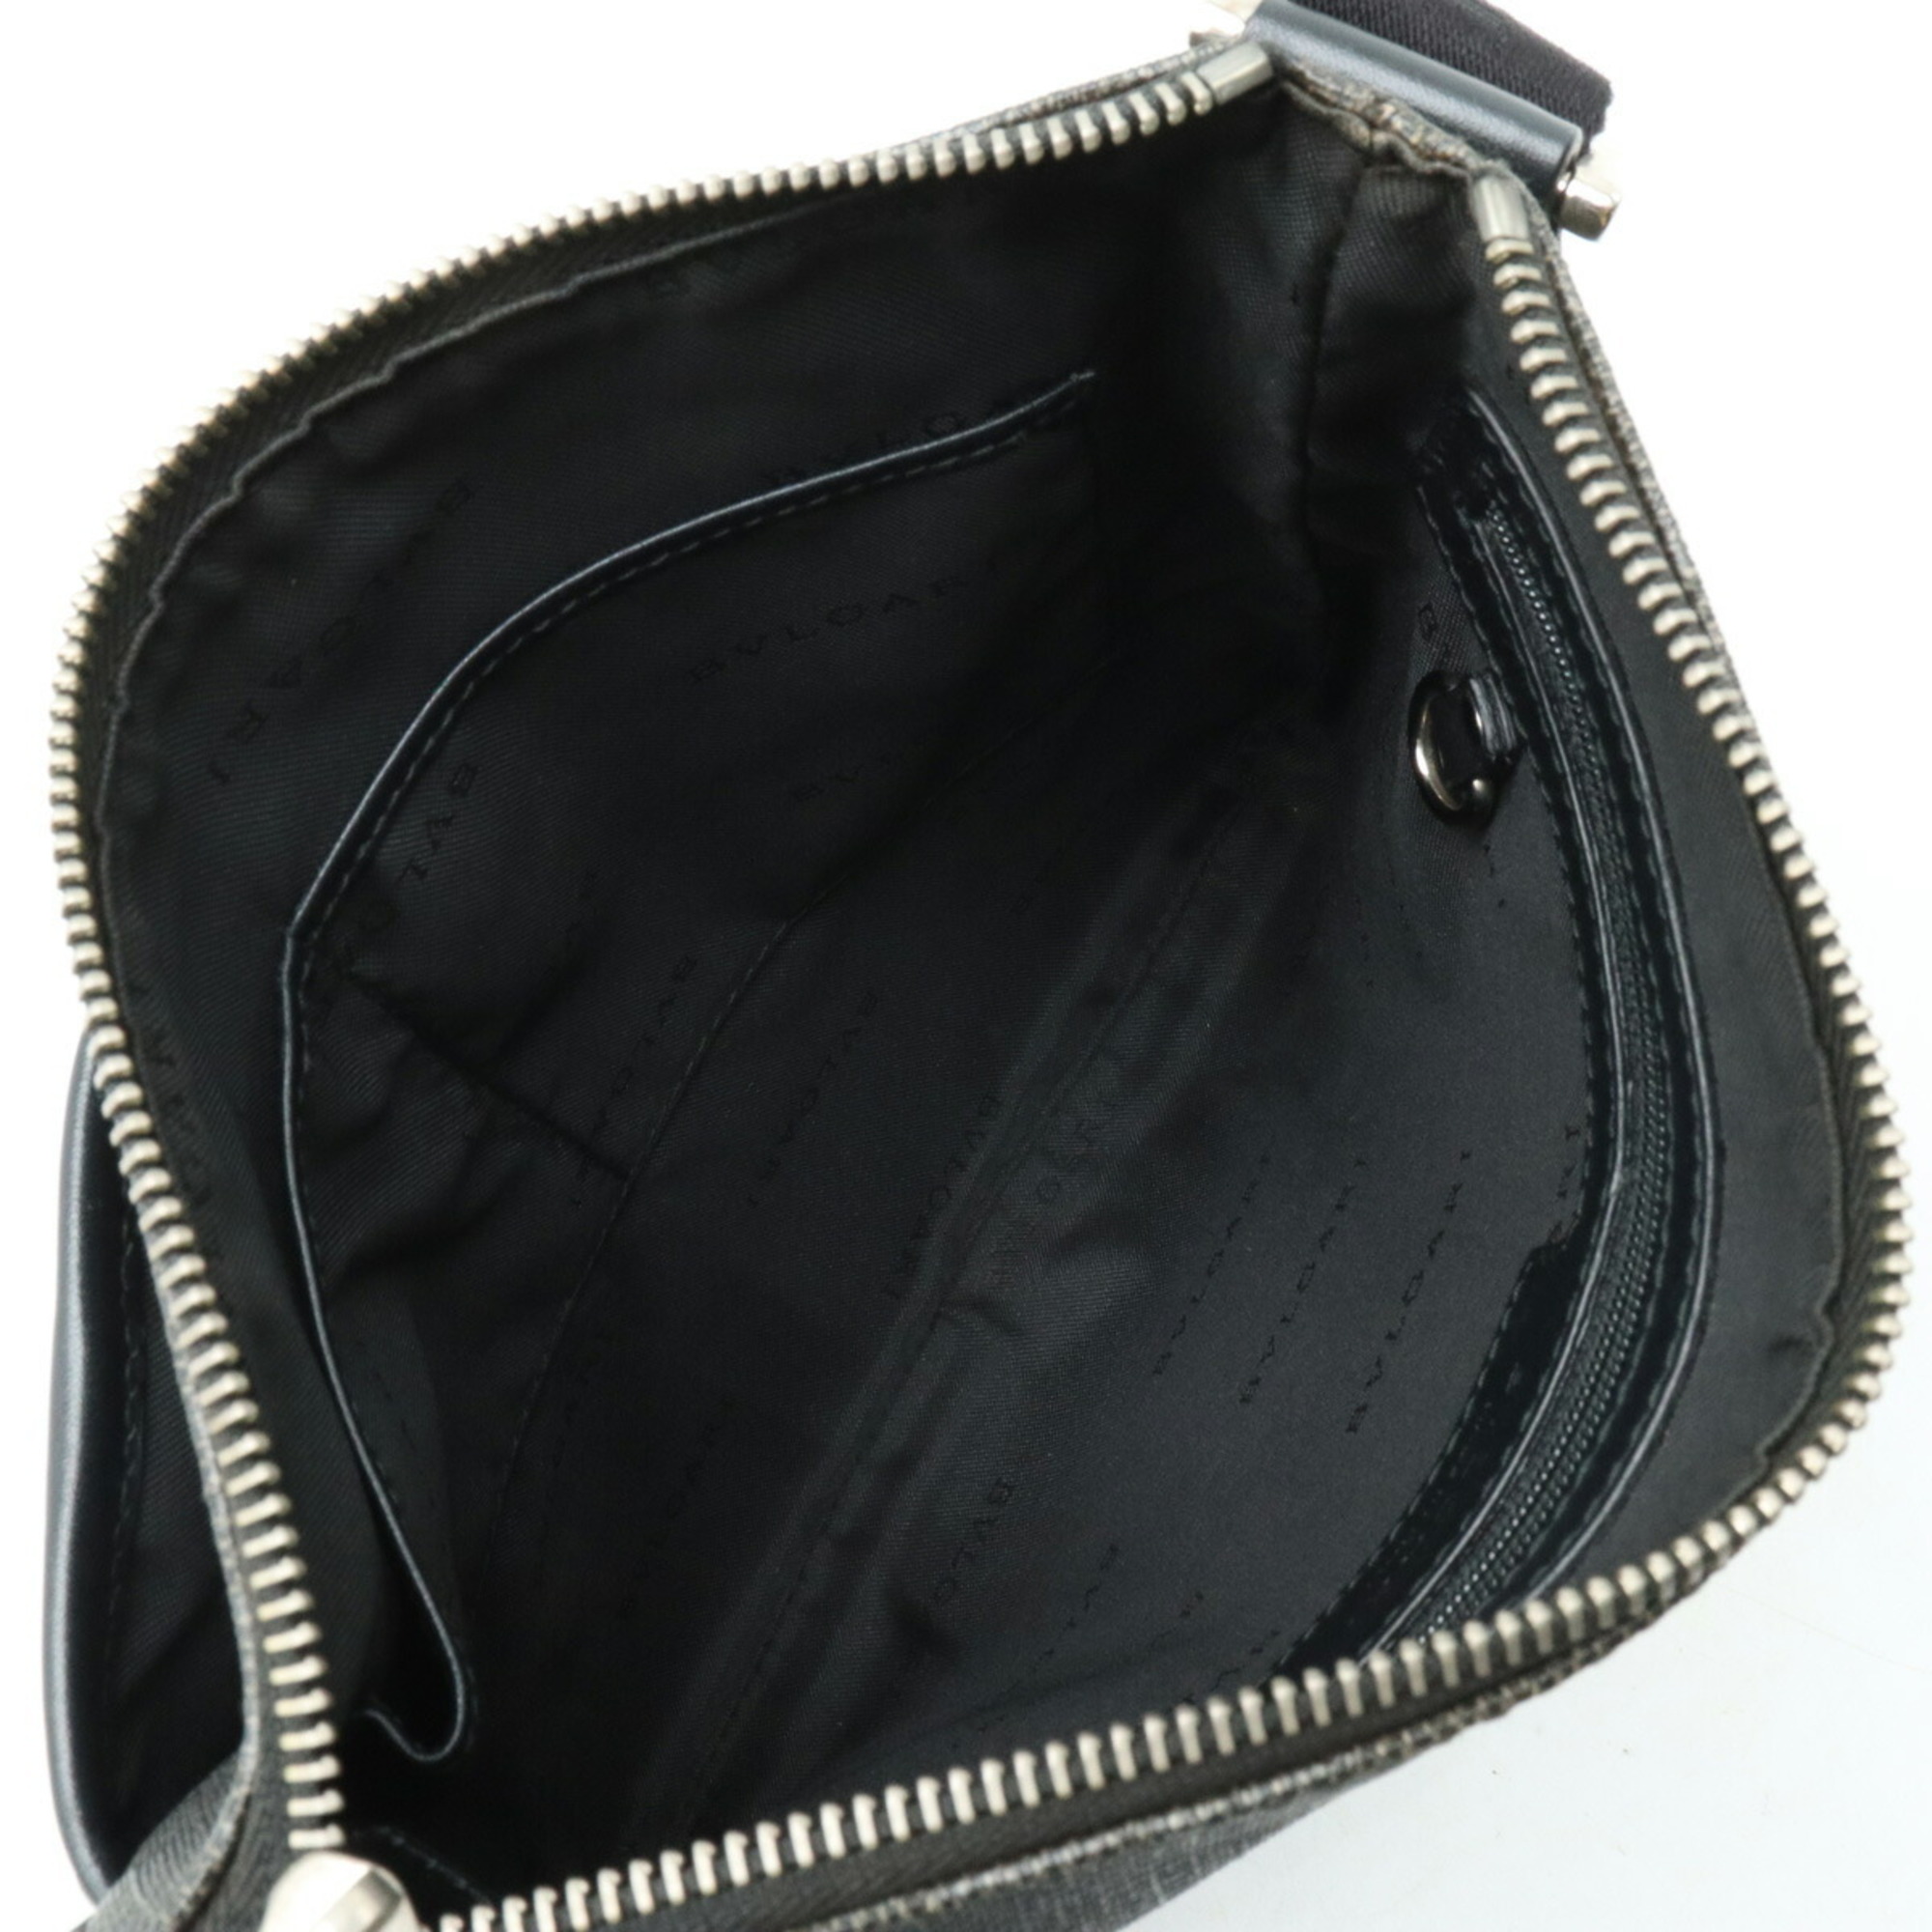 BVLGARI Bulgari Weekend Shoulder Bag PVC Leather Dark Gray Black 32459